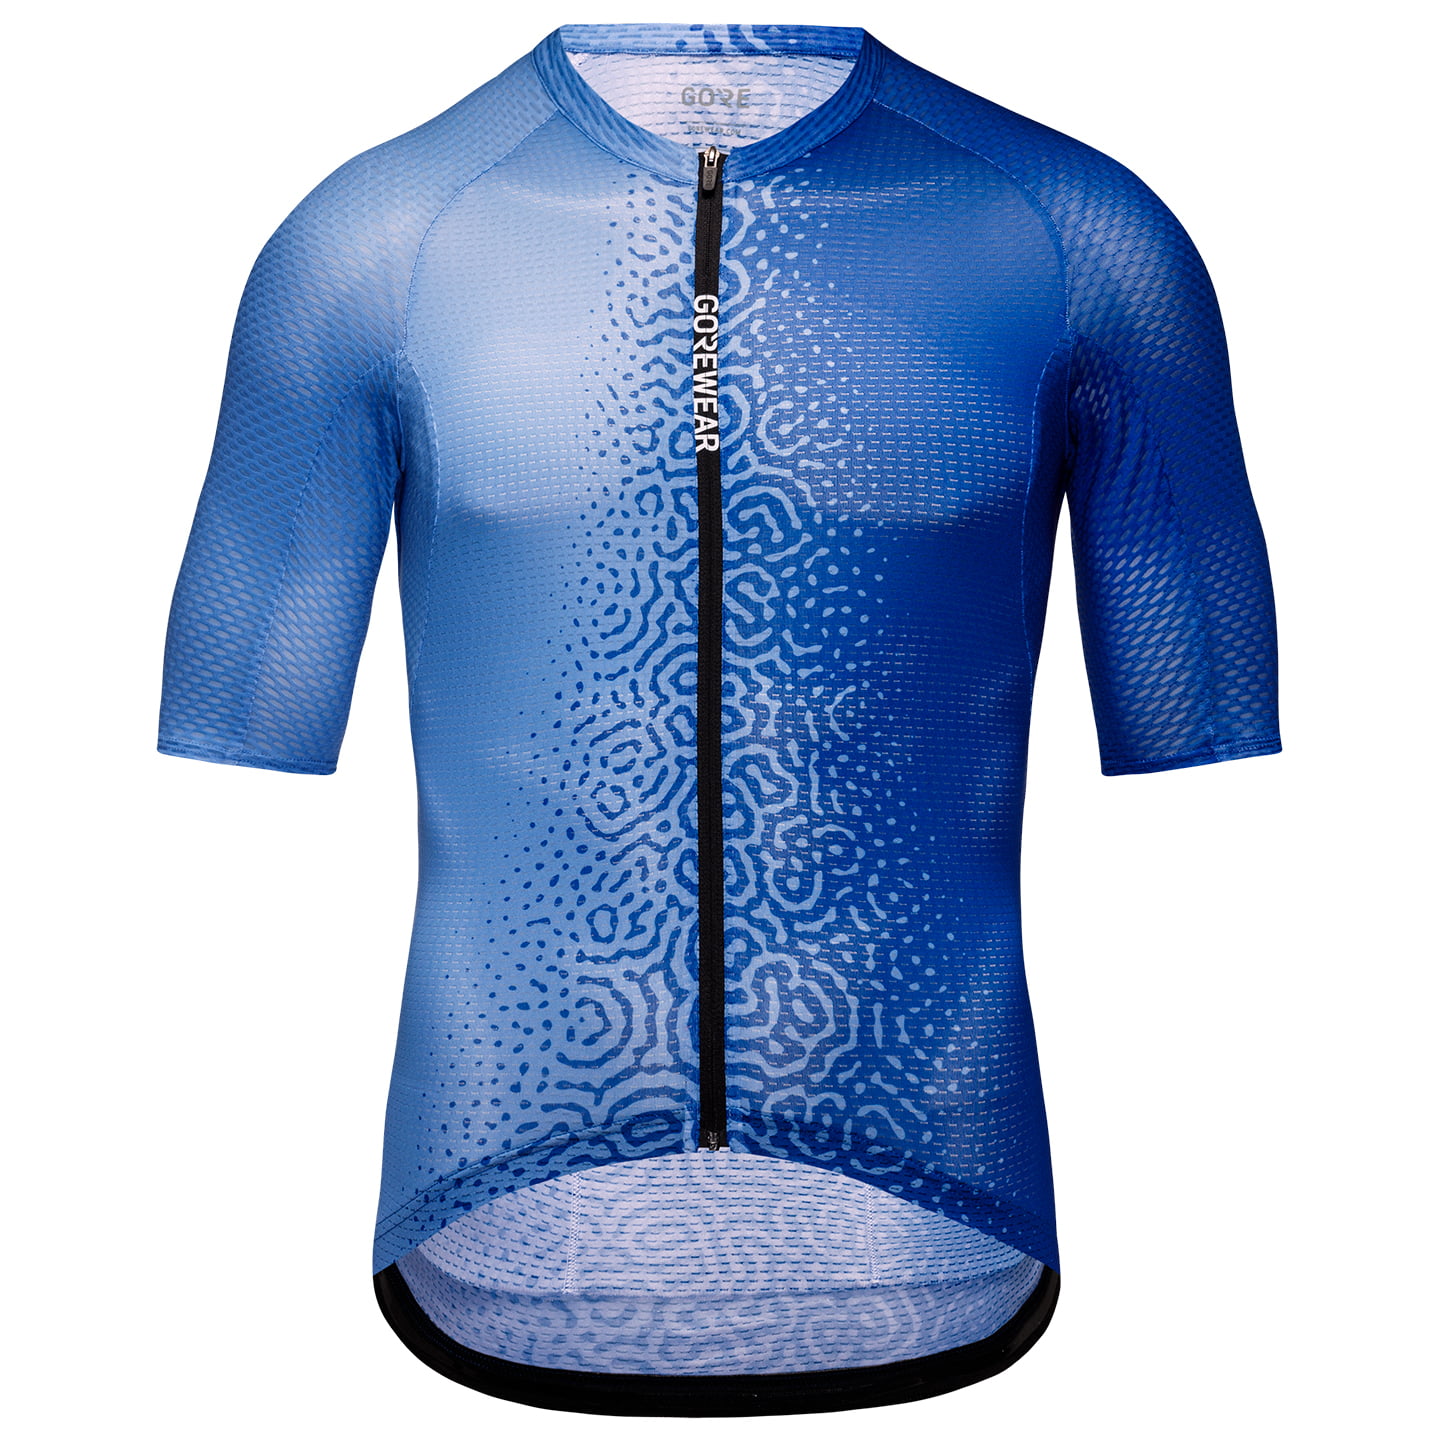 Spinshift Breathe Short Sleeve Jersey Short Sleeve Jersey, for men, size L, Cycling jersey, Cycling clothing